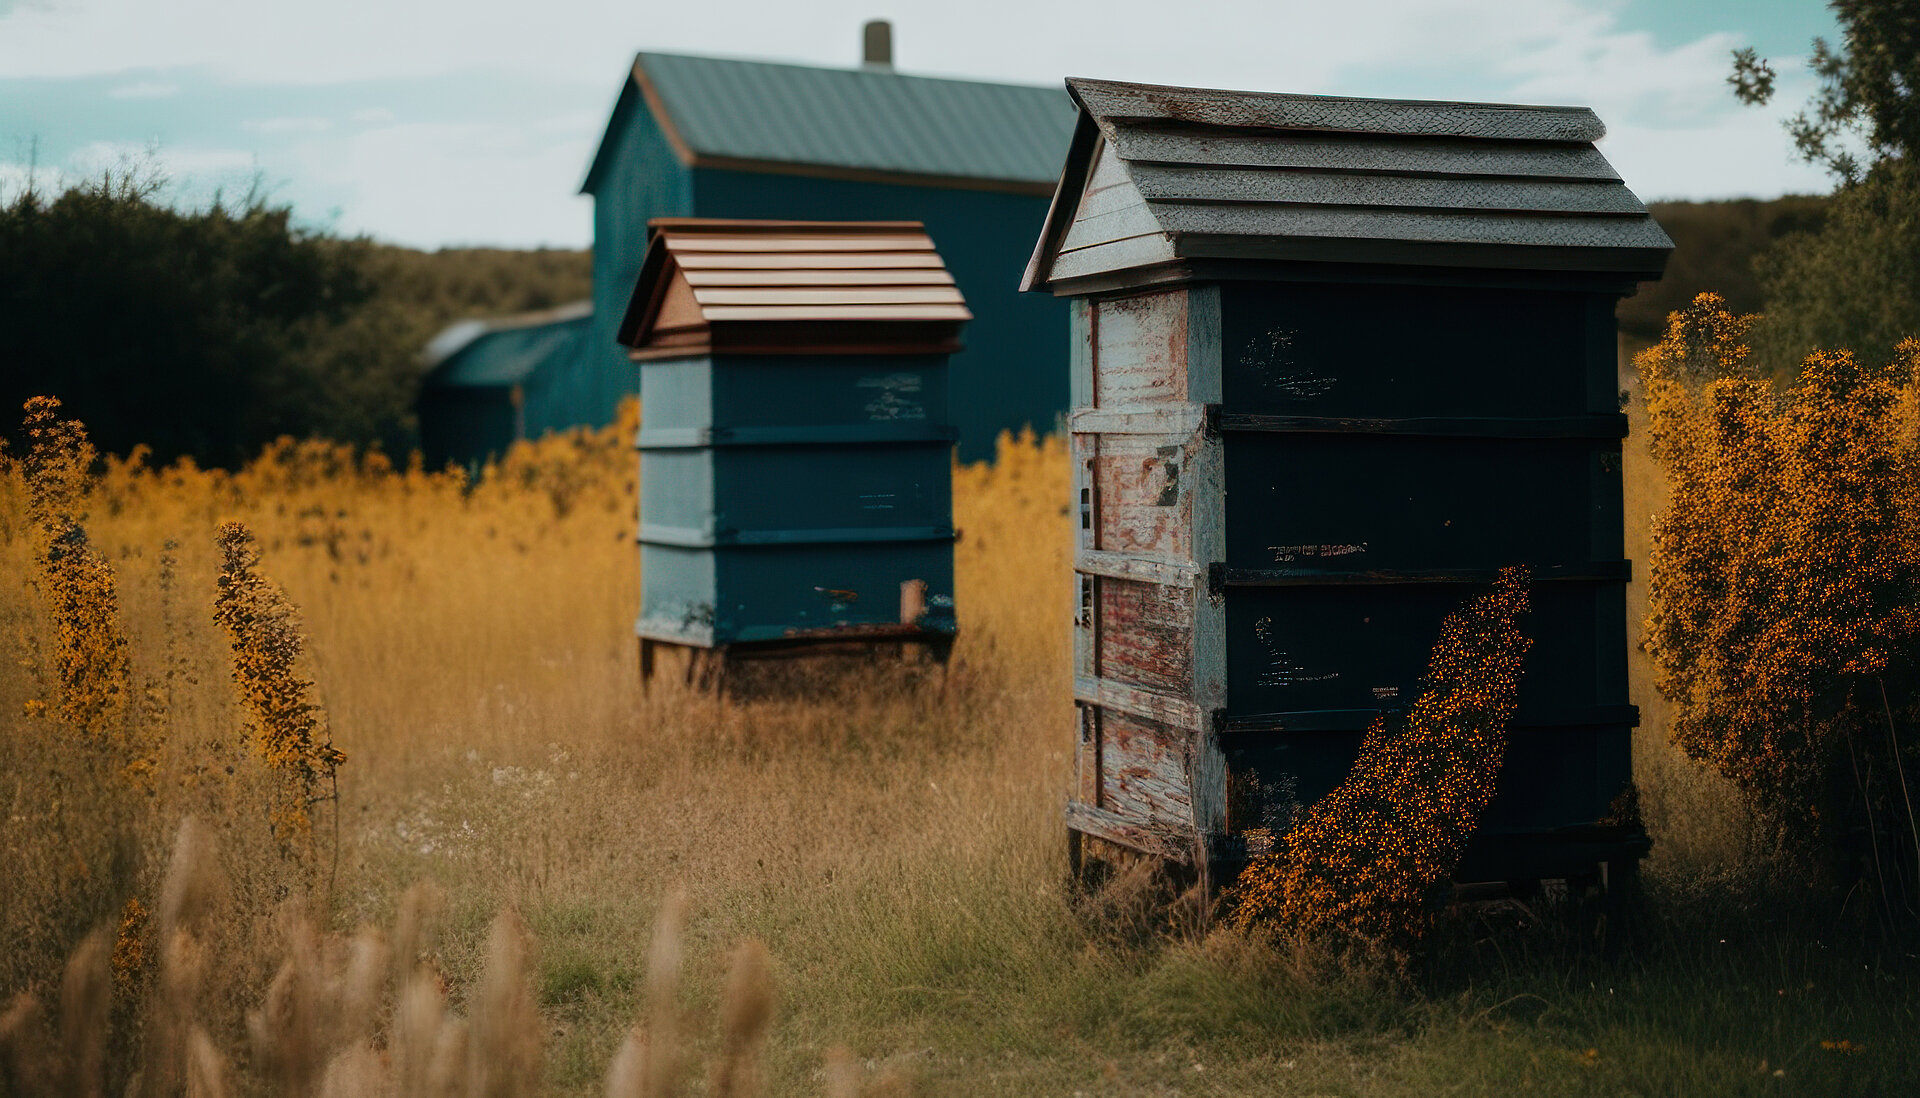 Bienenstock im alten Stil und auf einer Wiese